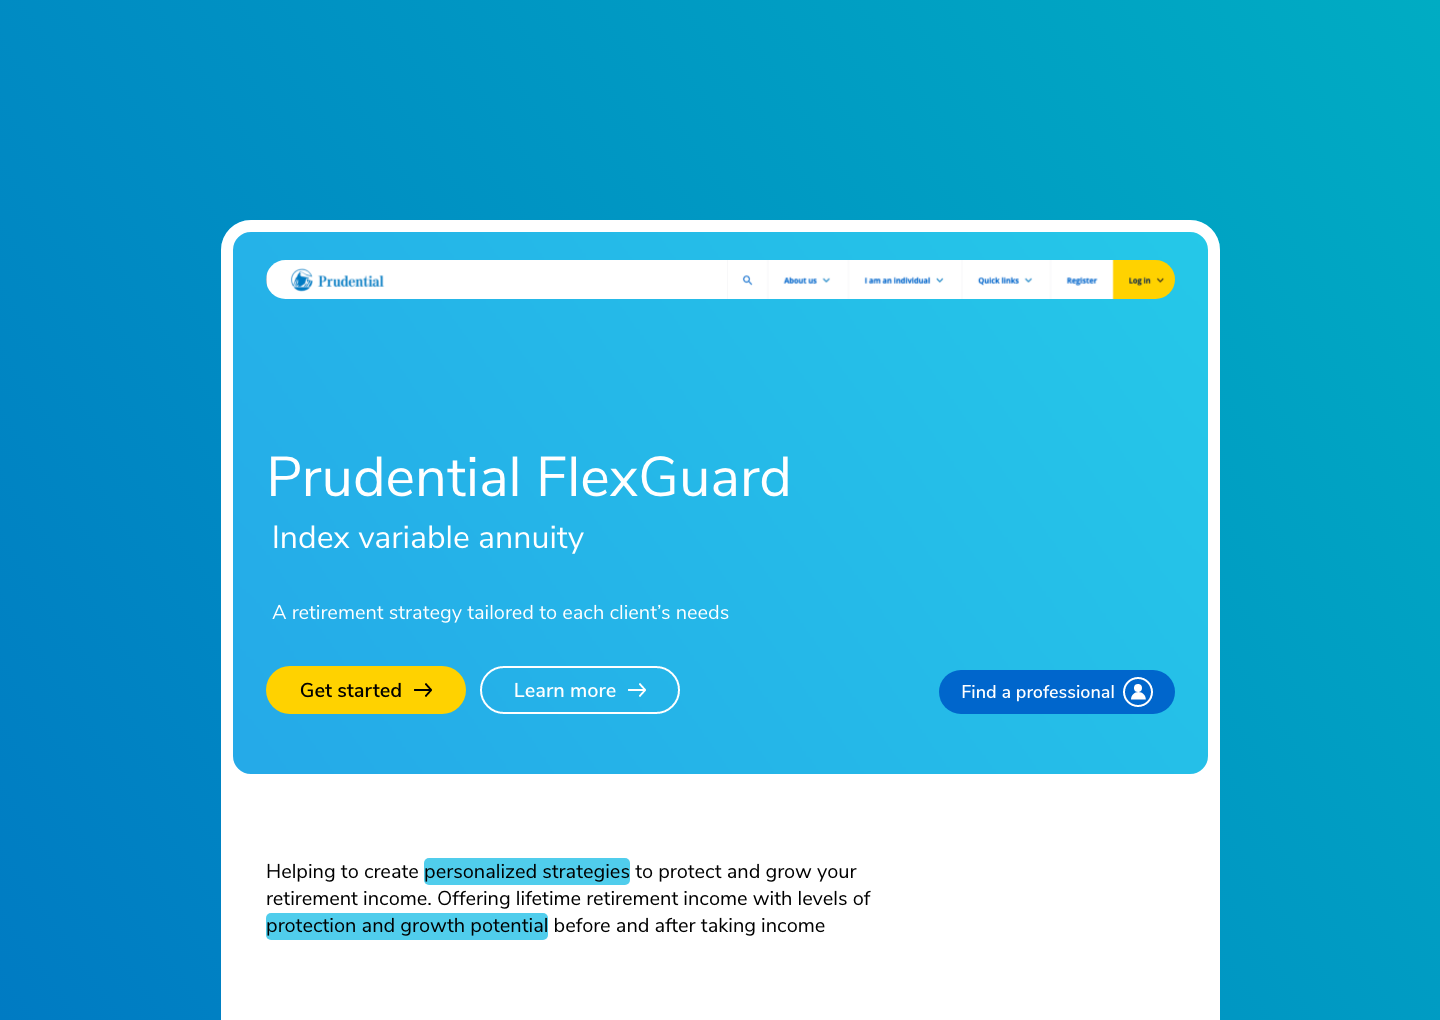 Prudential FlexGuard